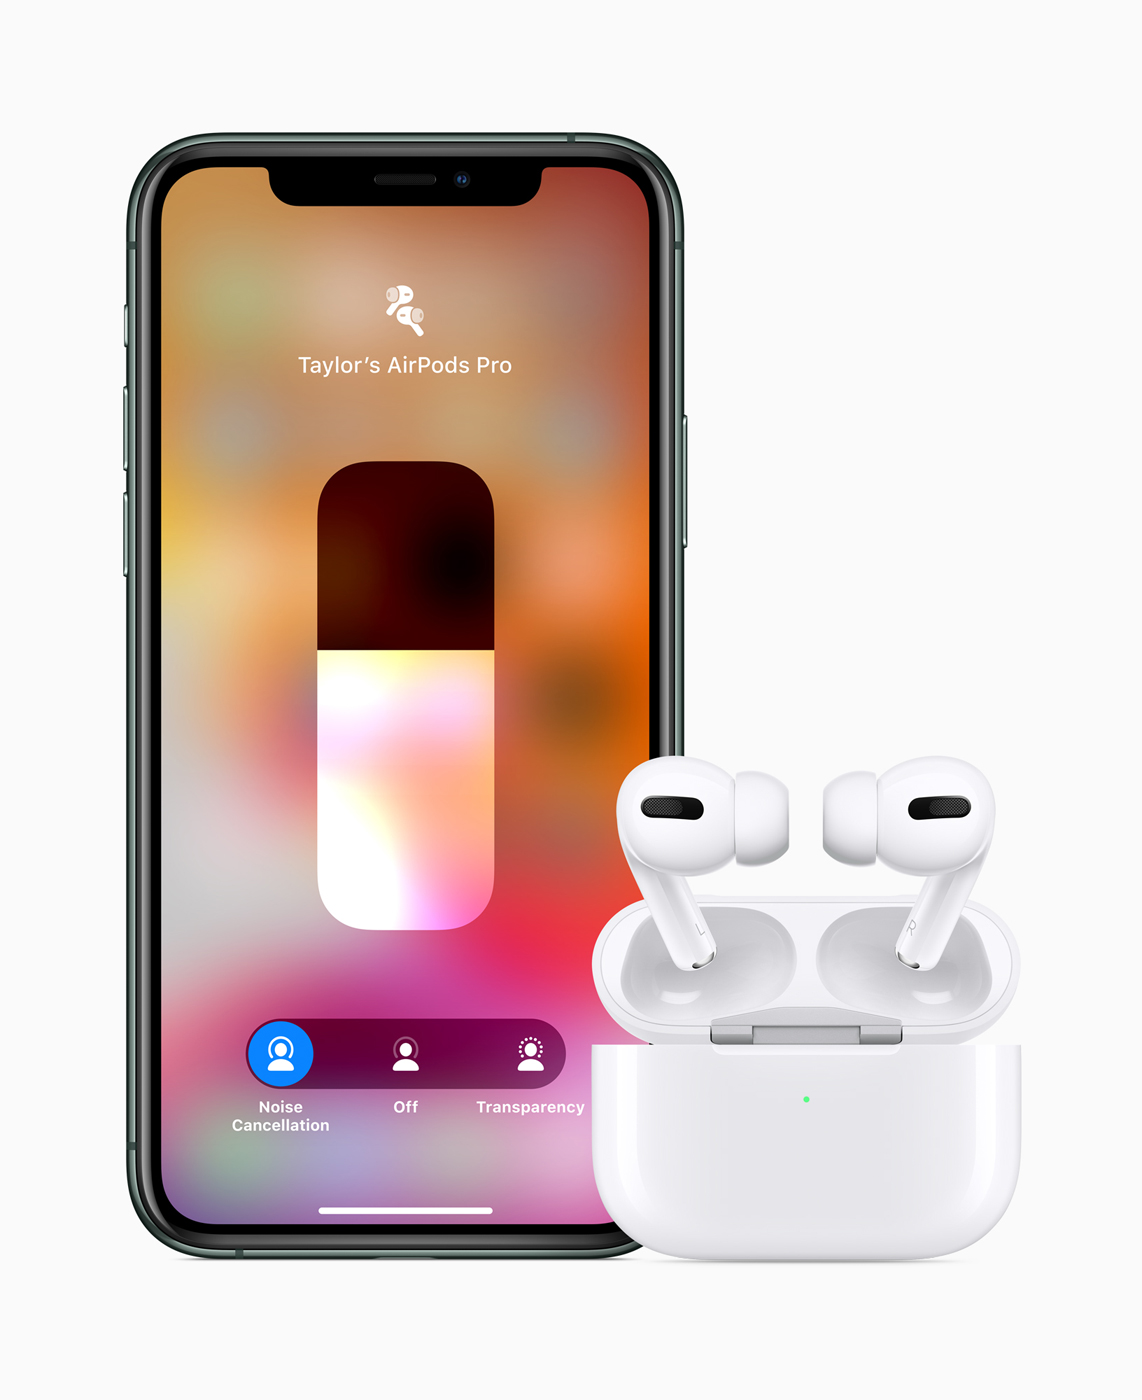 Apple Airpods Pro chính thức: thiết kế in-ear mới, chống ồn chủ động, giá 249USD